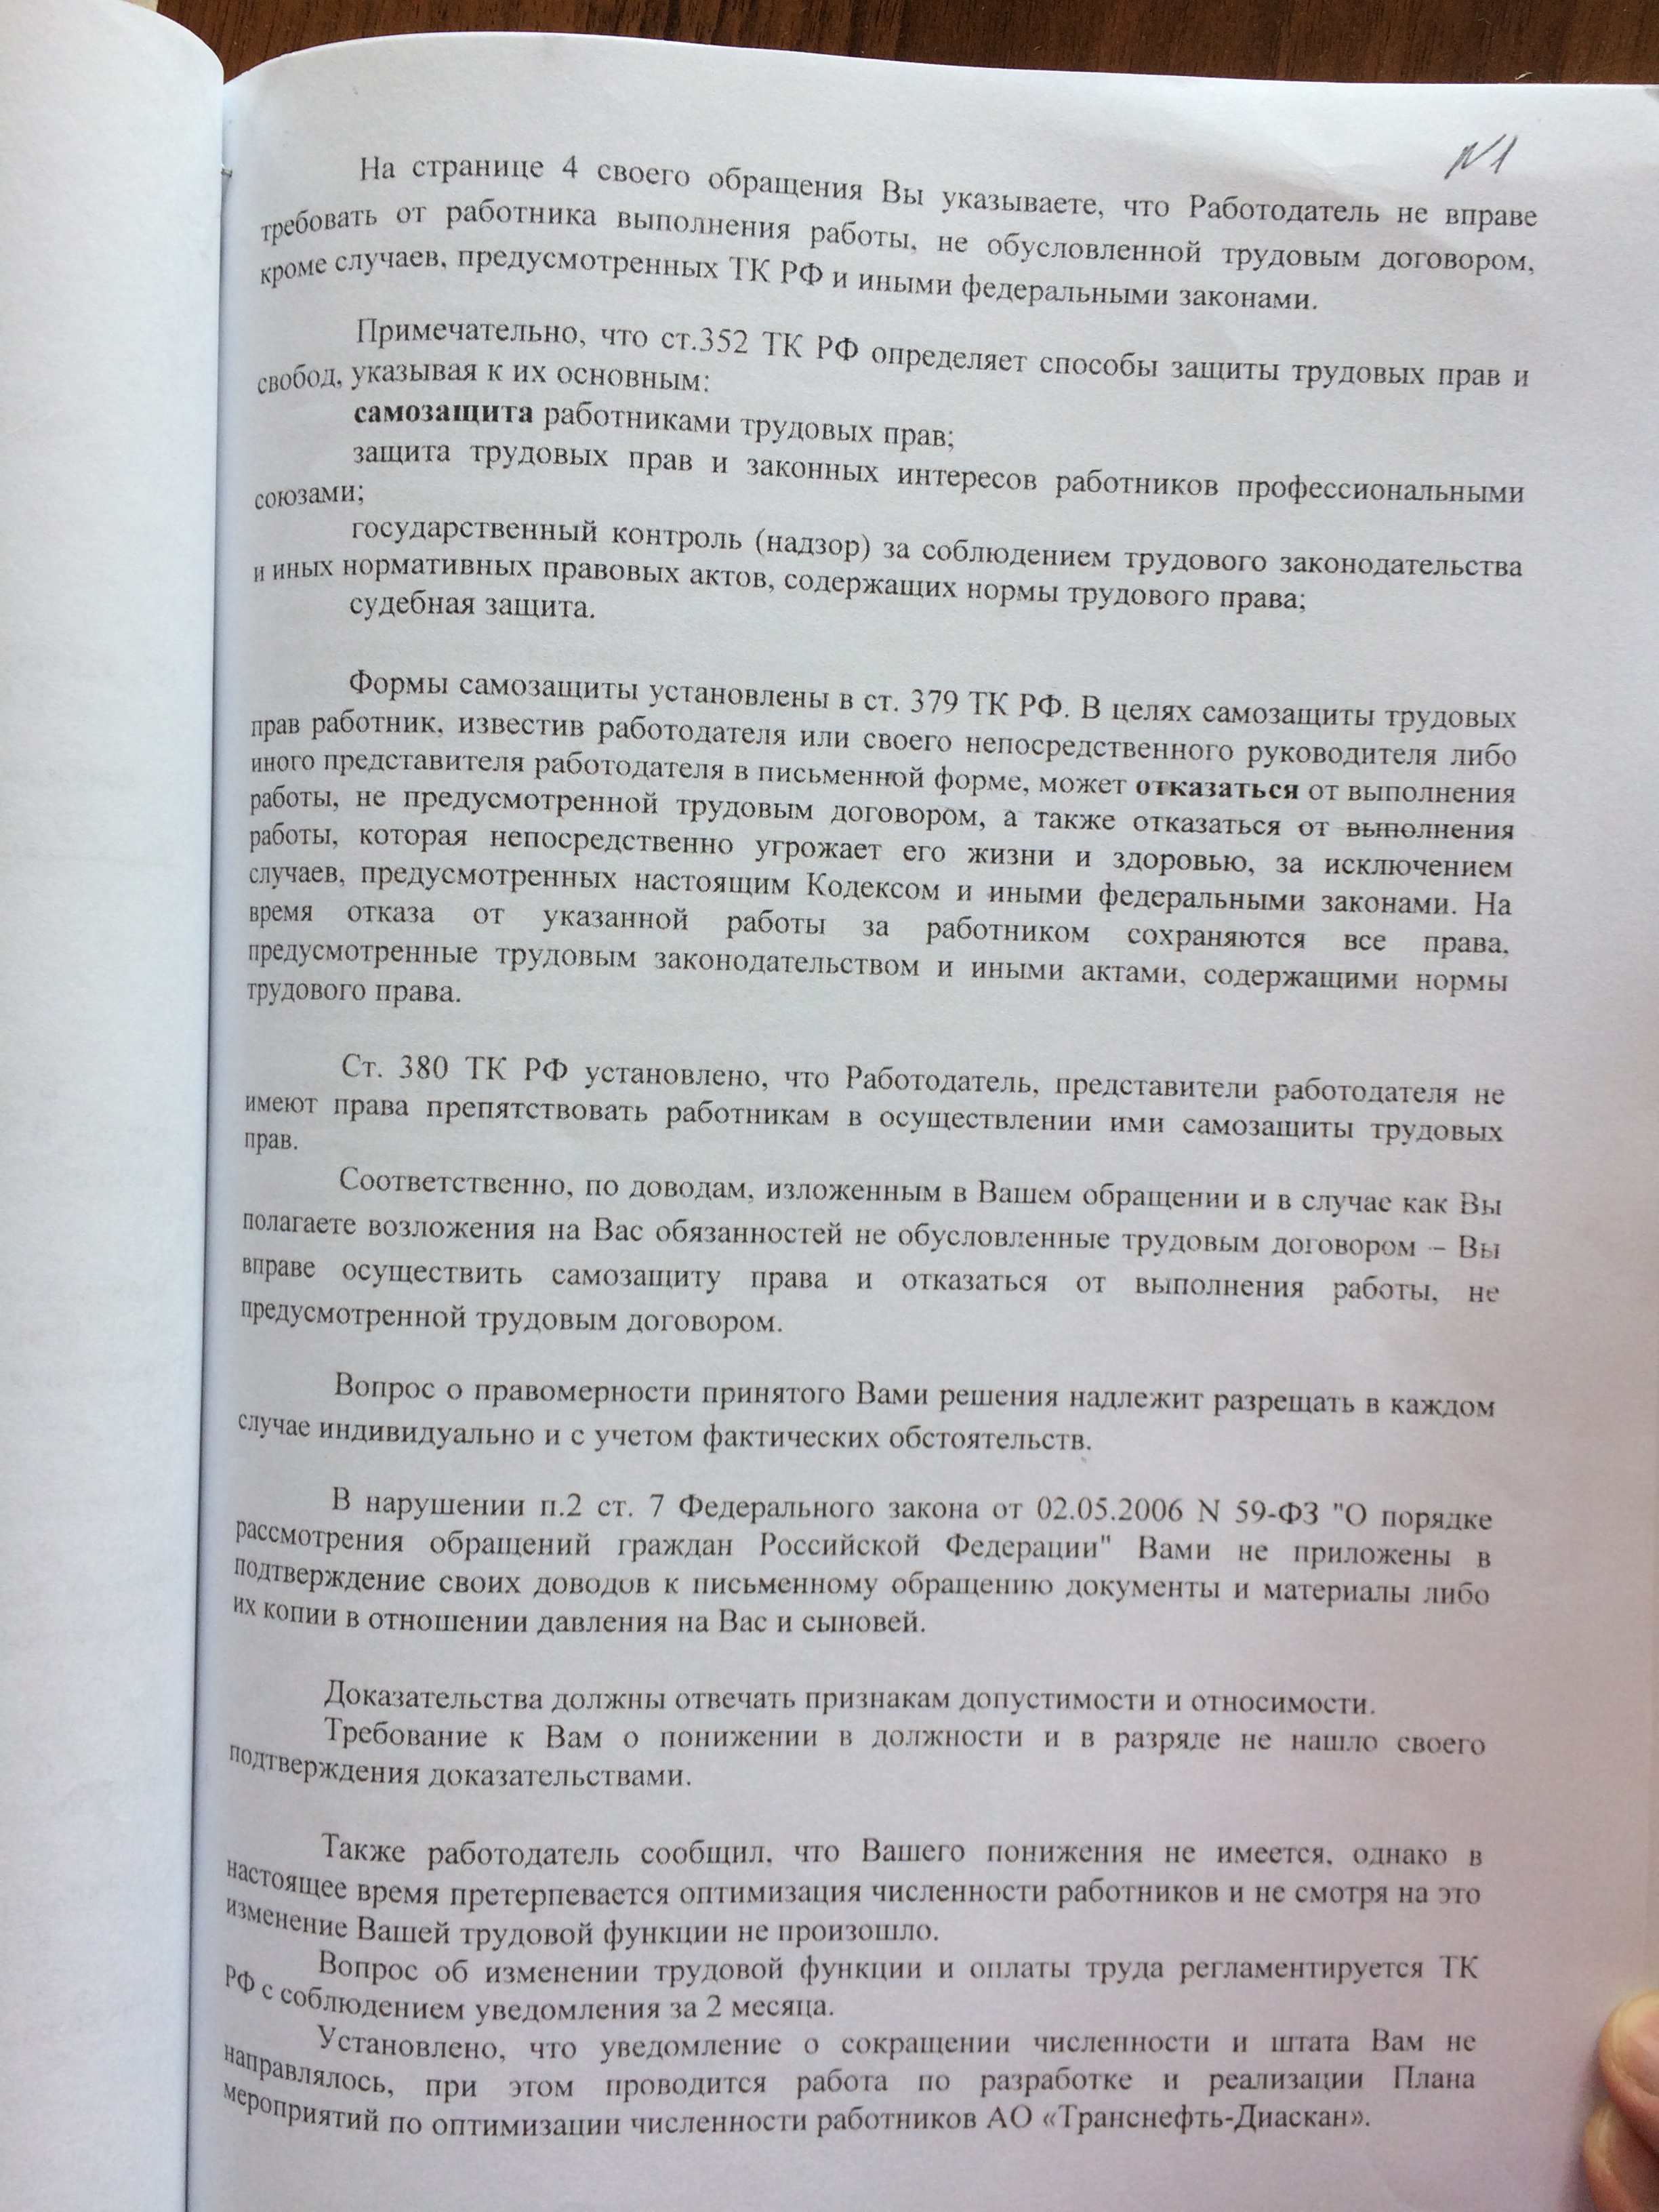 Фото документов проверки Луховицкой городской прокуратурой - 42 (5)